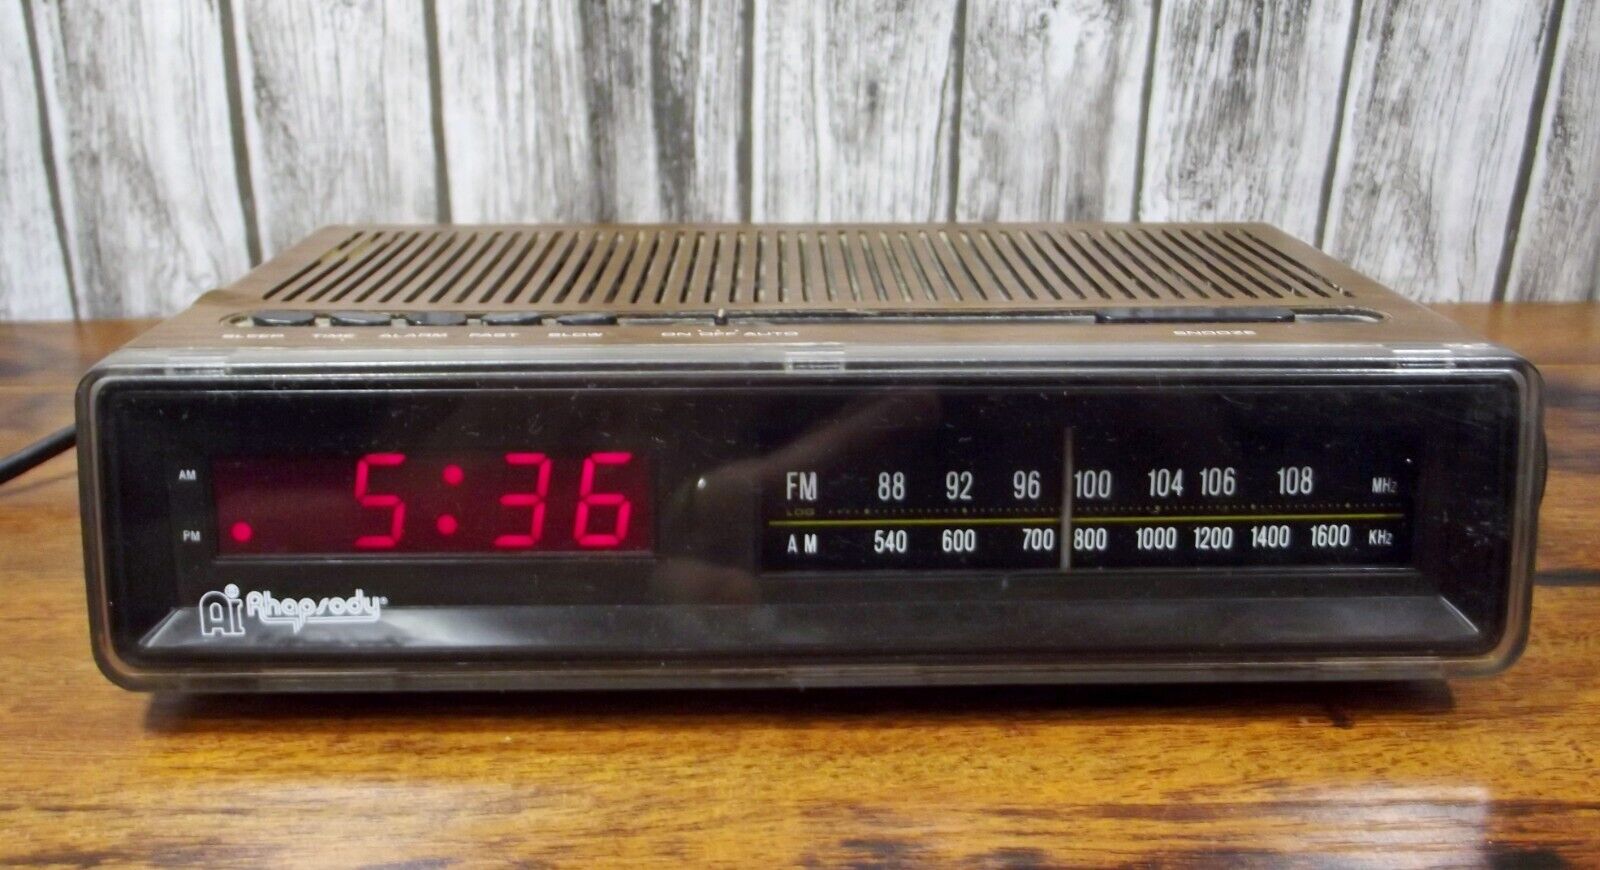 Vintage Ai Rhapsody Model RY-1016 AM/FM Alarm Clock Radio Wood Grain Style